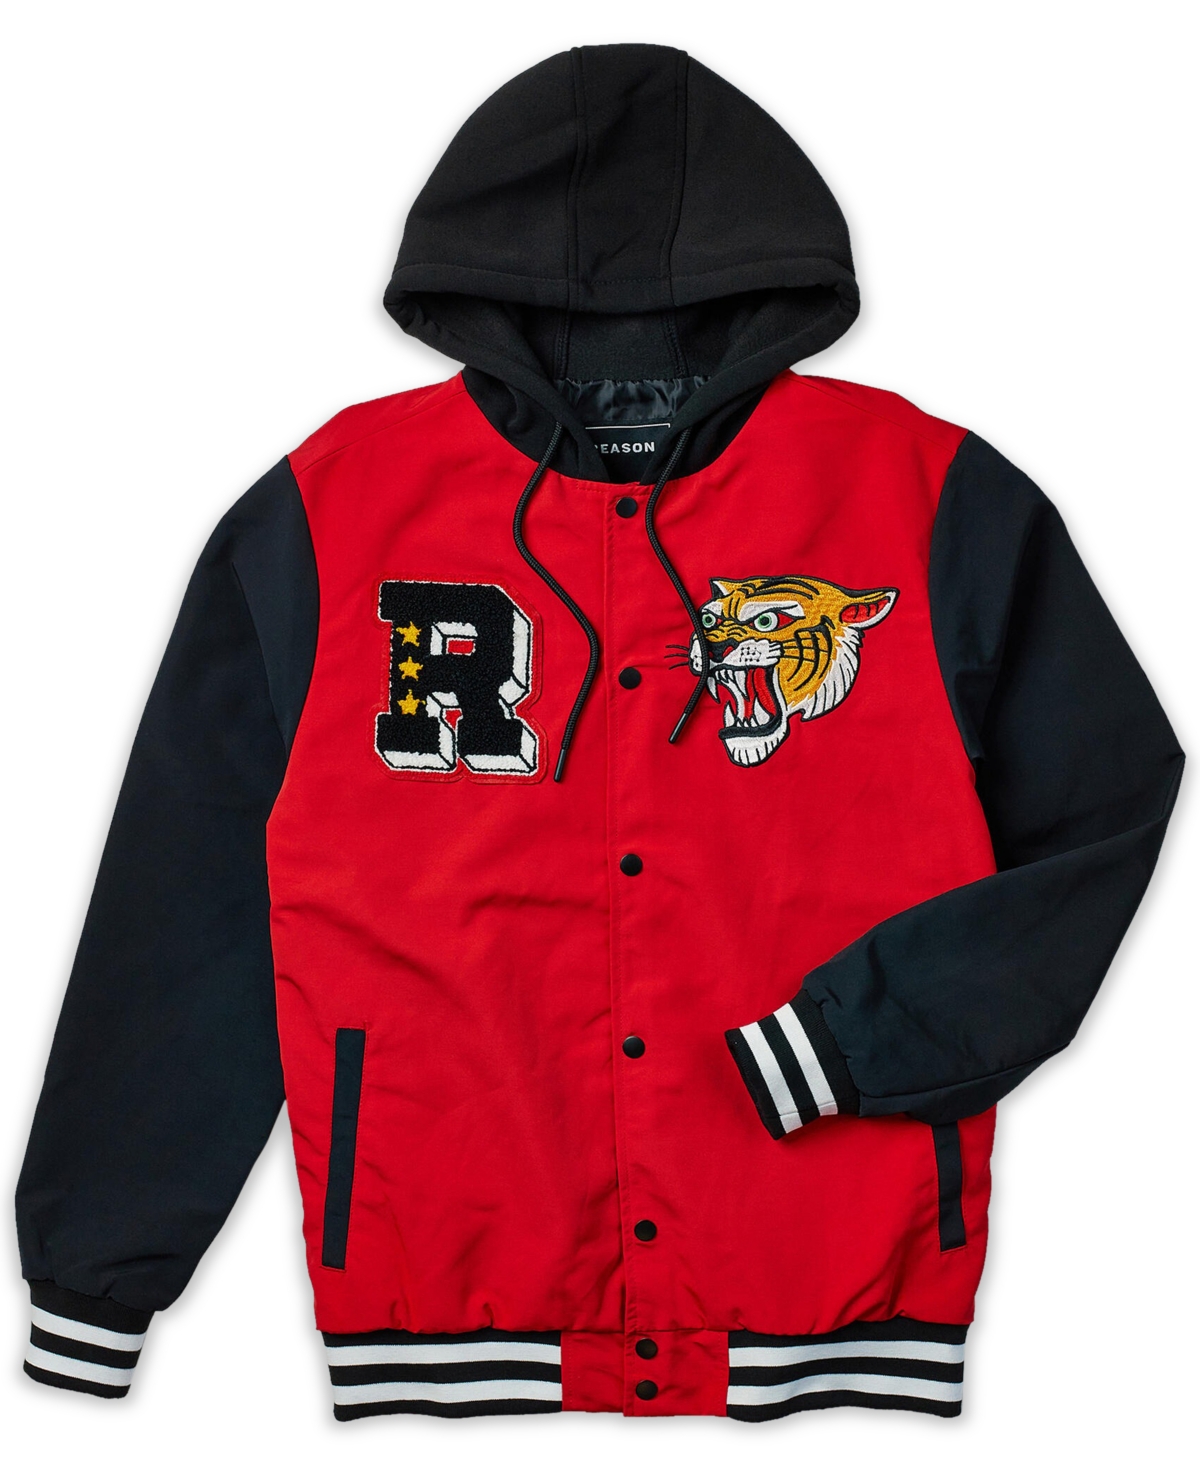 Reason Men's Tigers Varsity Hooded Jacket In Red